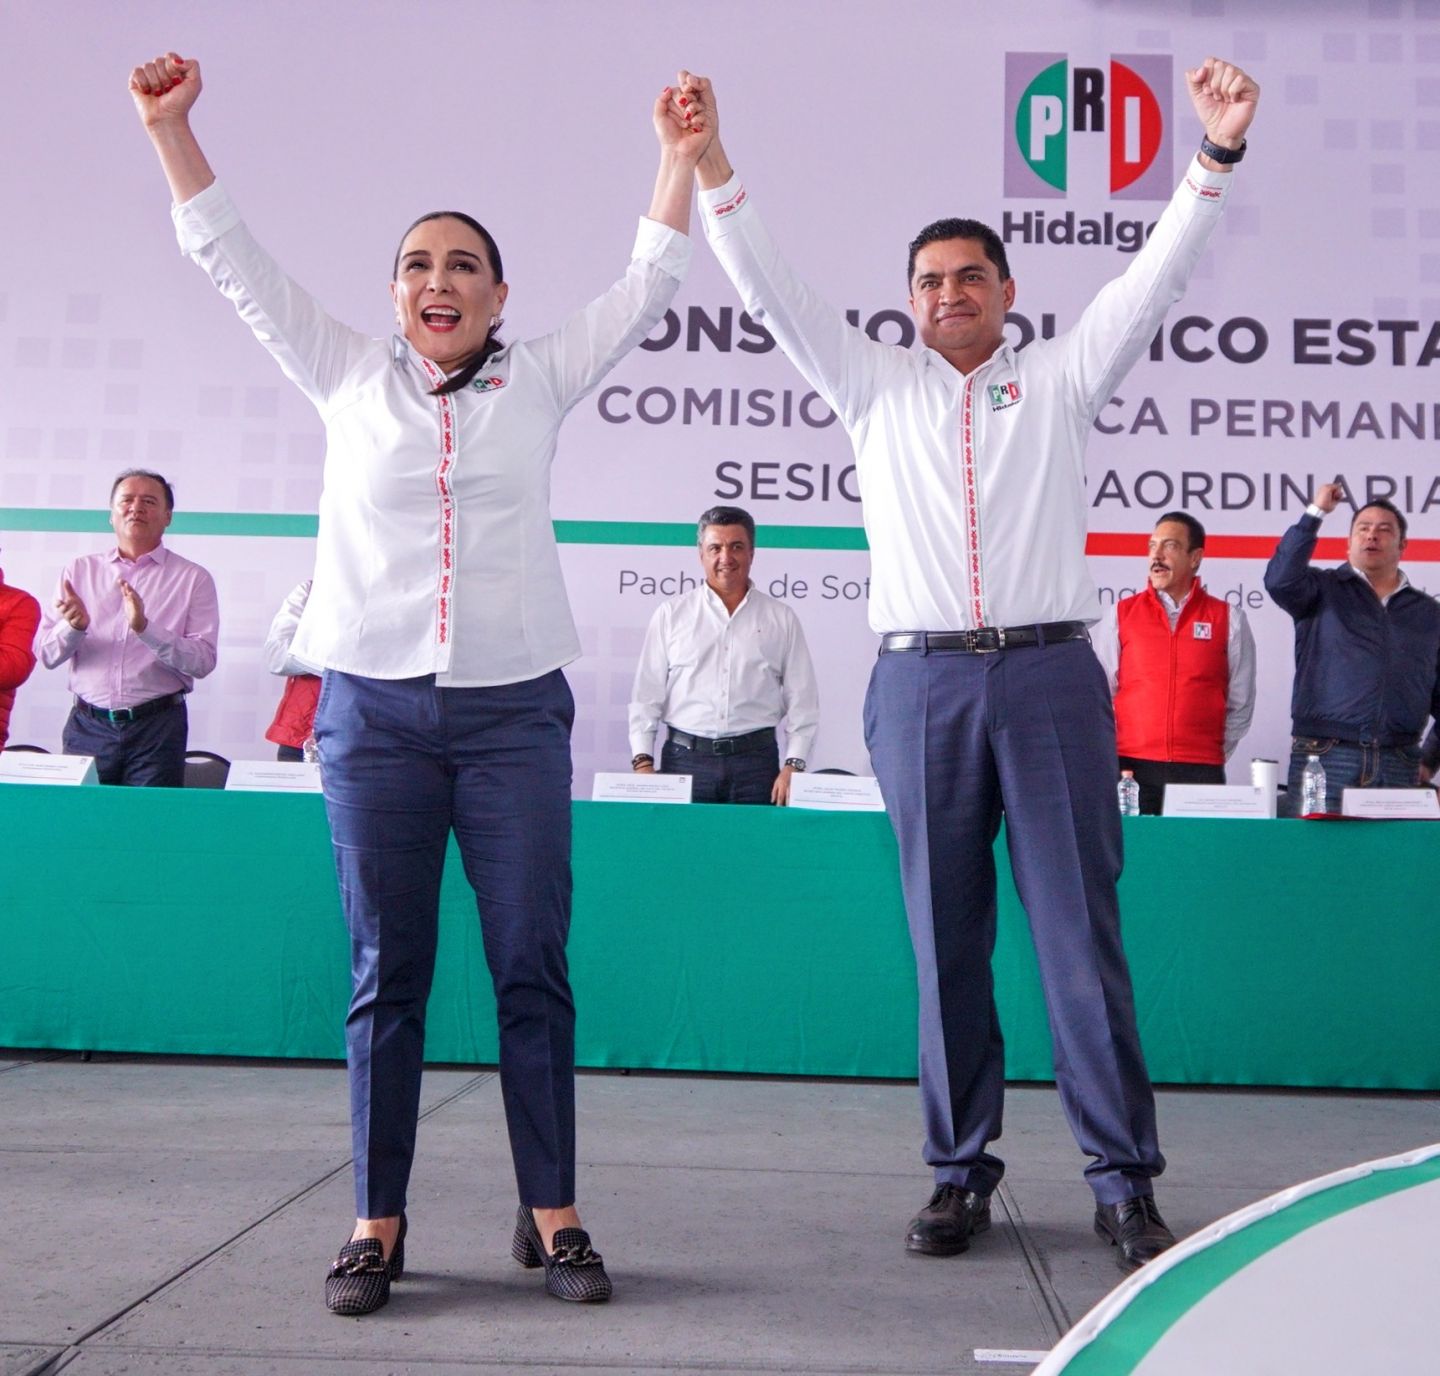 Erika Rodríguez Hernández y Julio Valera Piedras, guiarán el destino del PRI en Hidalgo